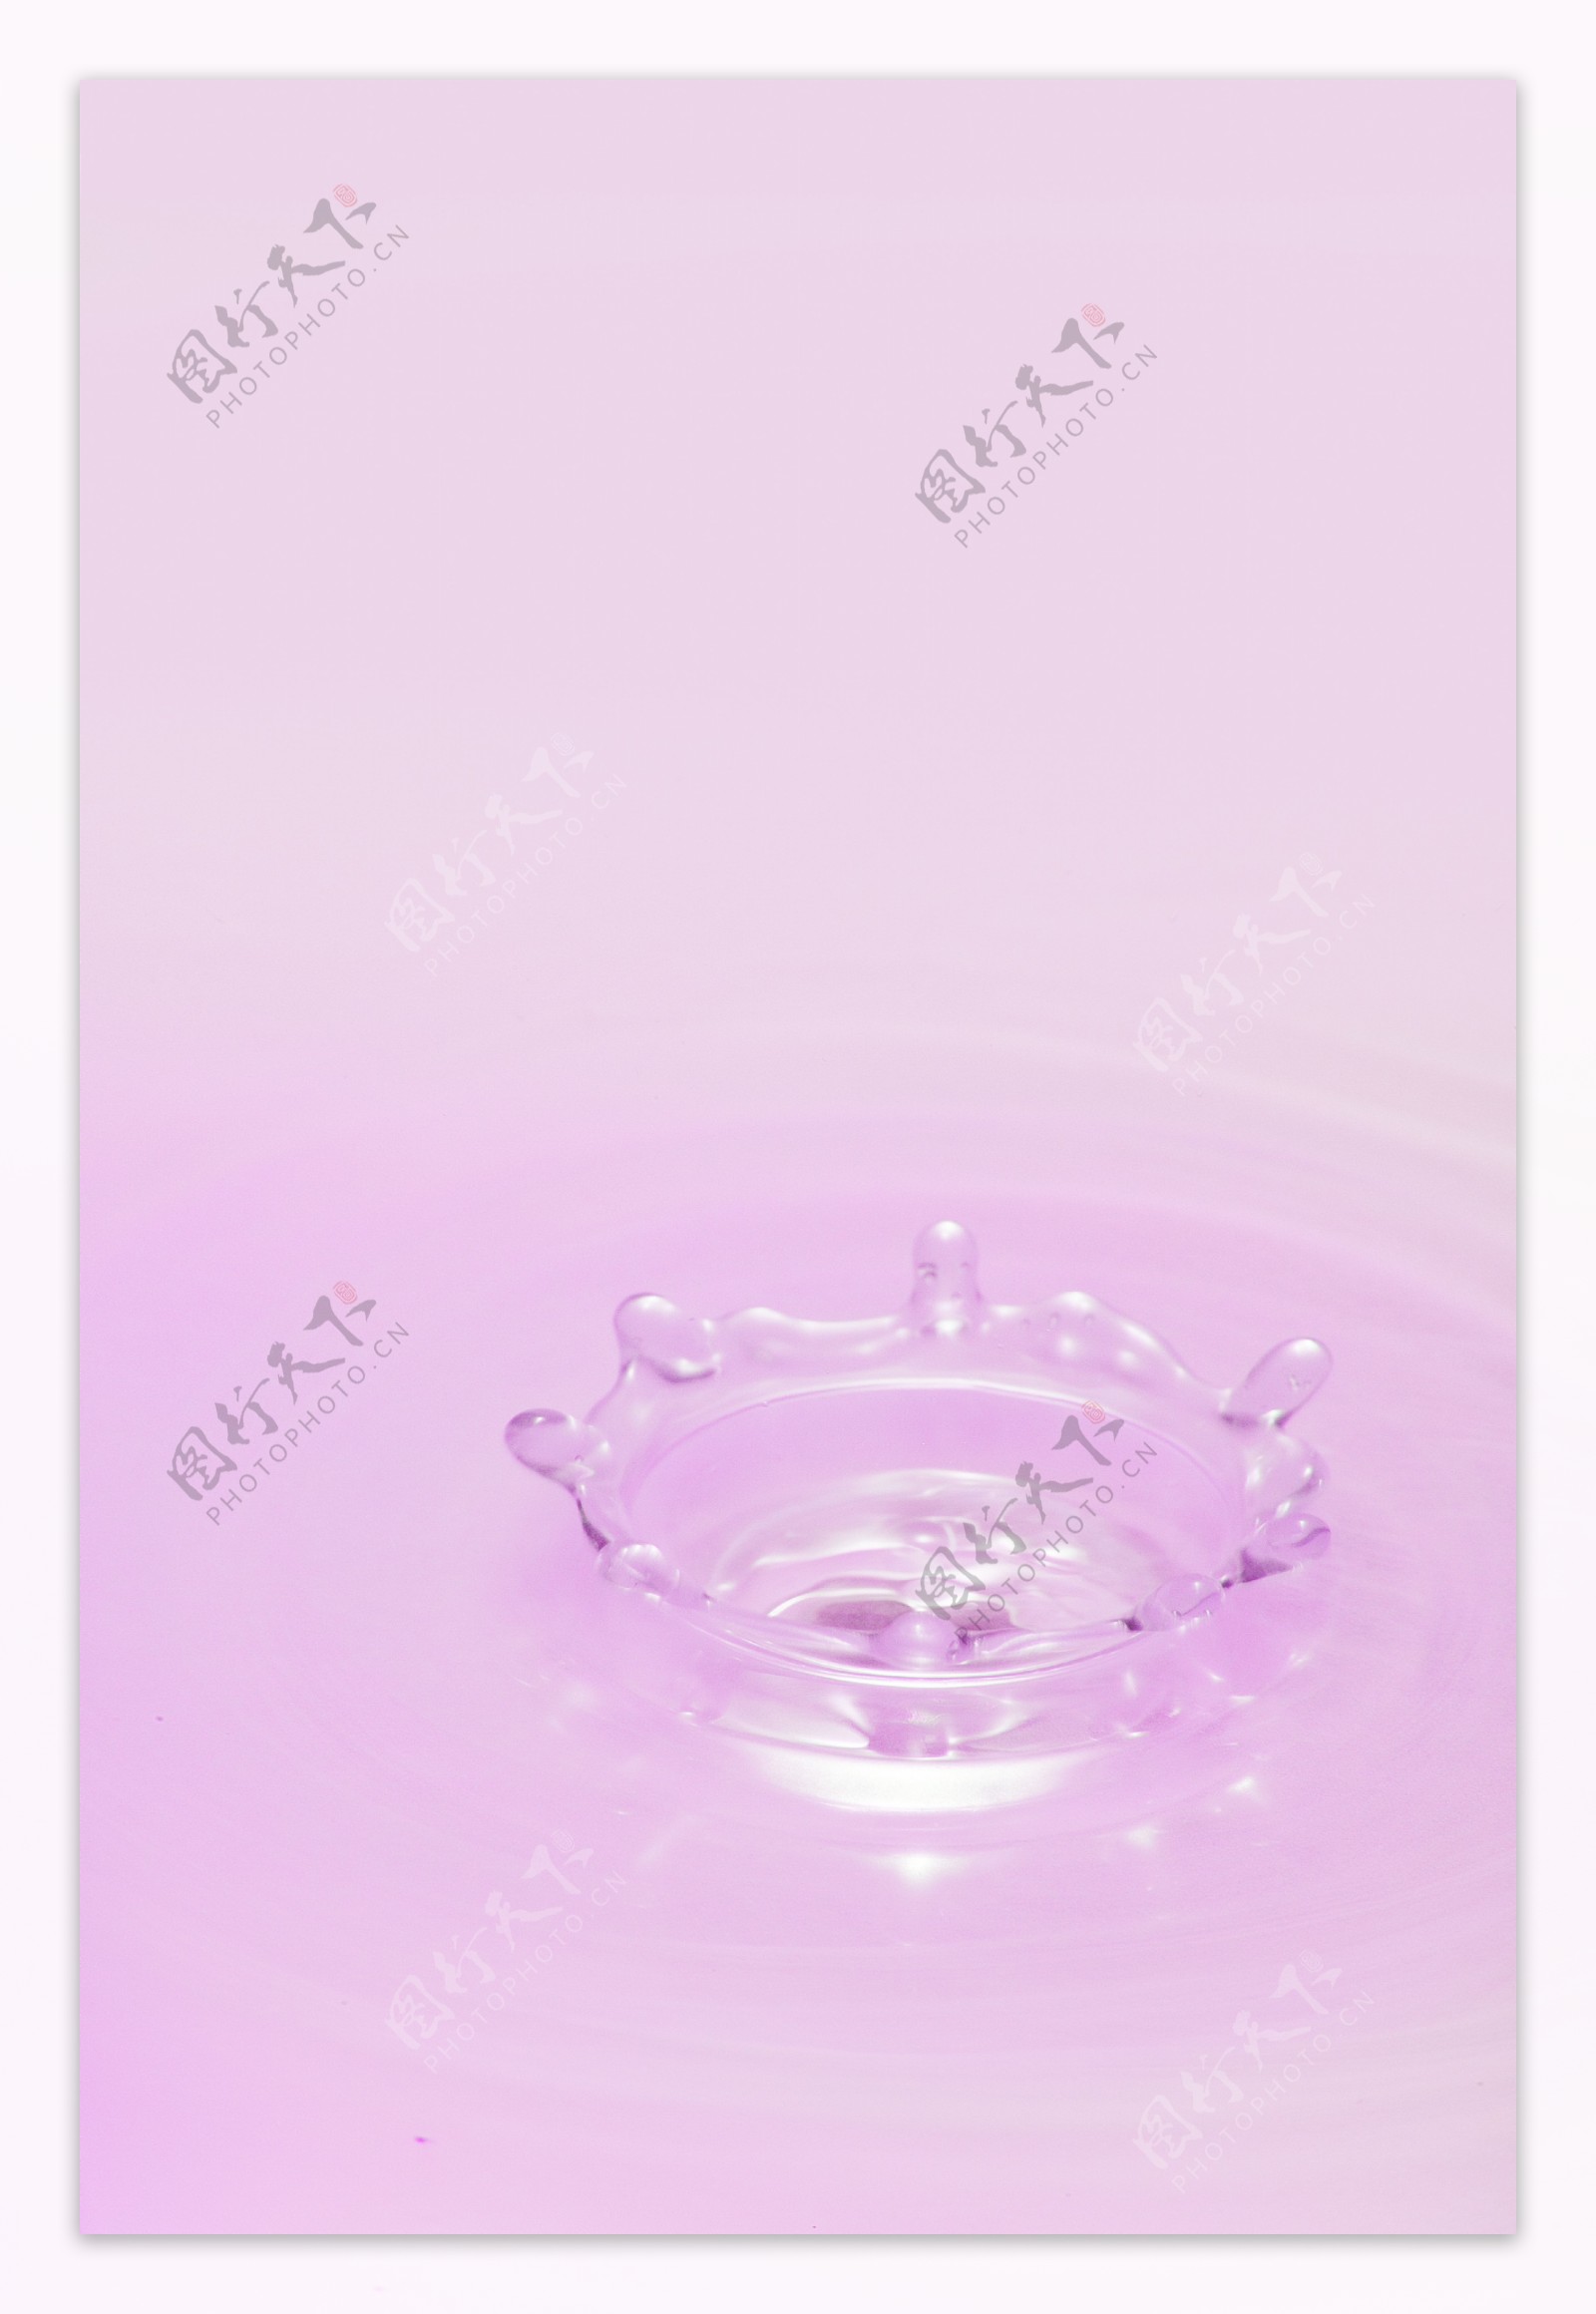 水滴水花图片